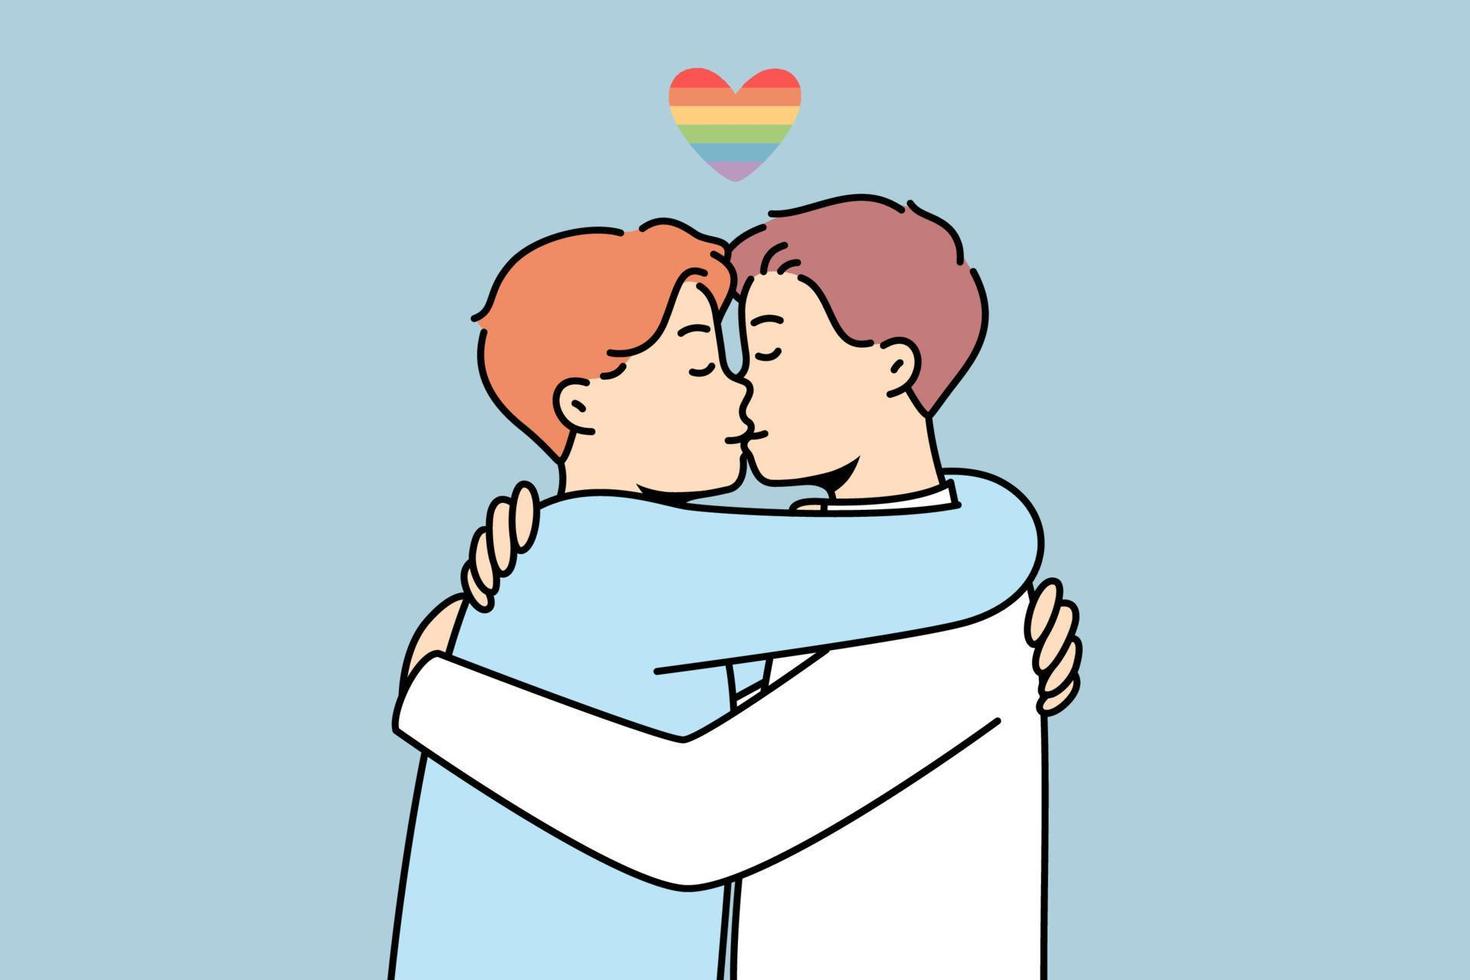 män kramas och kyssar. Gay par omfamning visa kärlek och tillgivenhet. HBTQ gemenskap begrepp. vektor illustration.